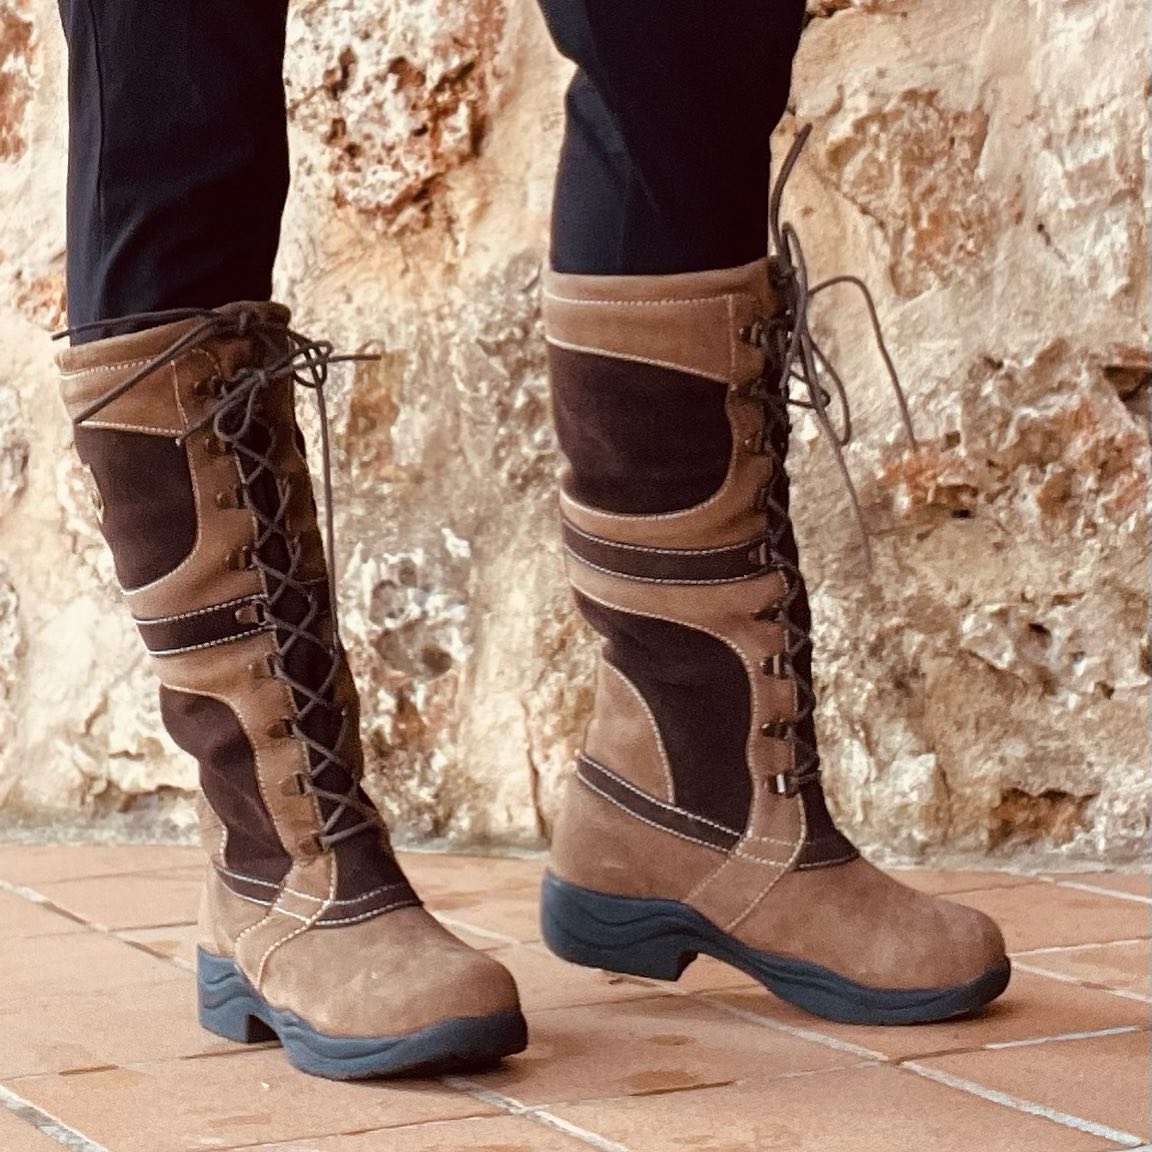 Hidalgo Stiefel Granada Insulated Boots